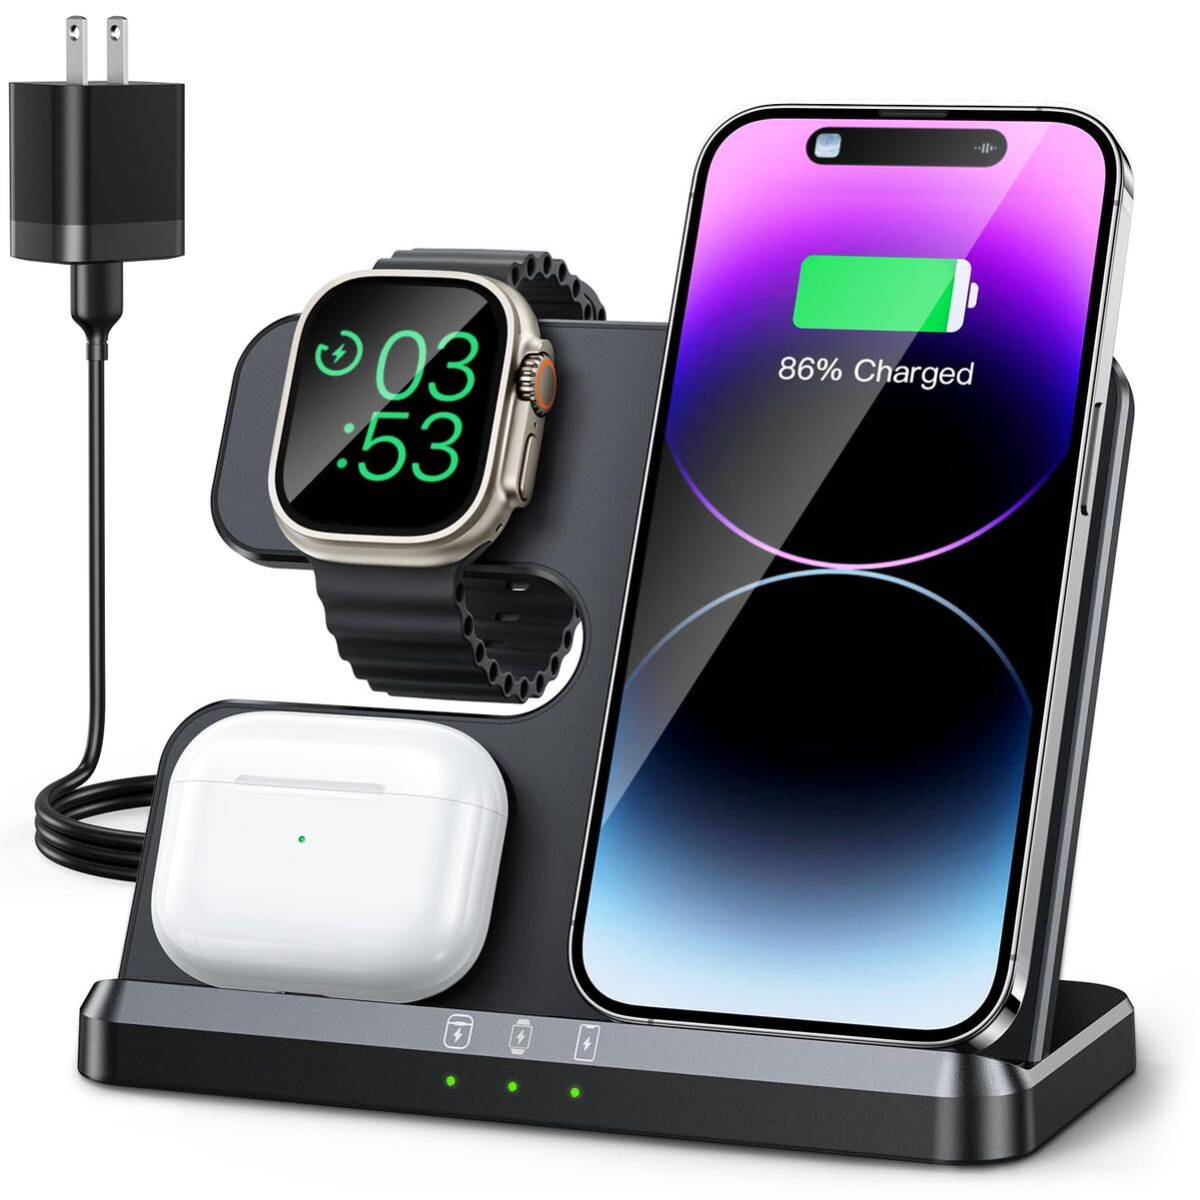 ワイヤレス充電器3in1アップルウォッチ充電器同時にiPhone/Apple Watch/AirPods に対応 急速充電置くだけワイヤレス充電器 iPhone 